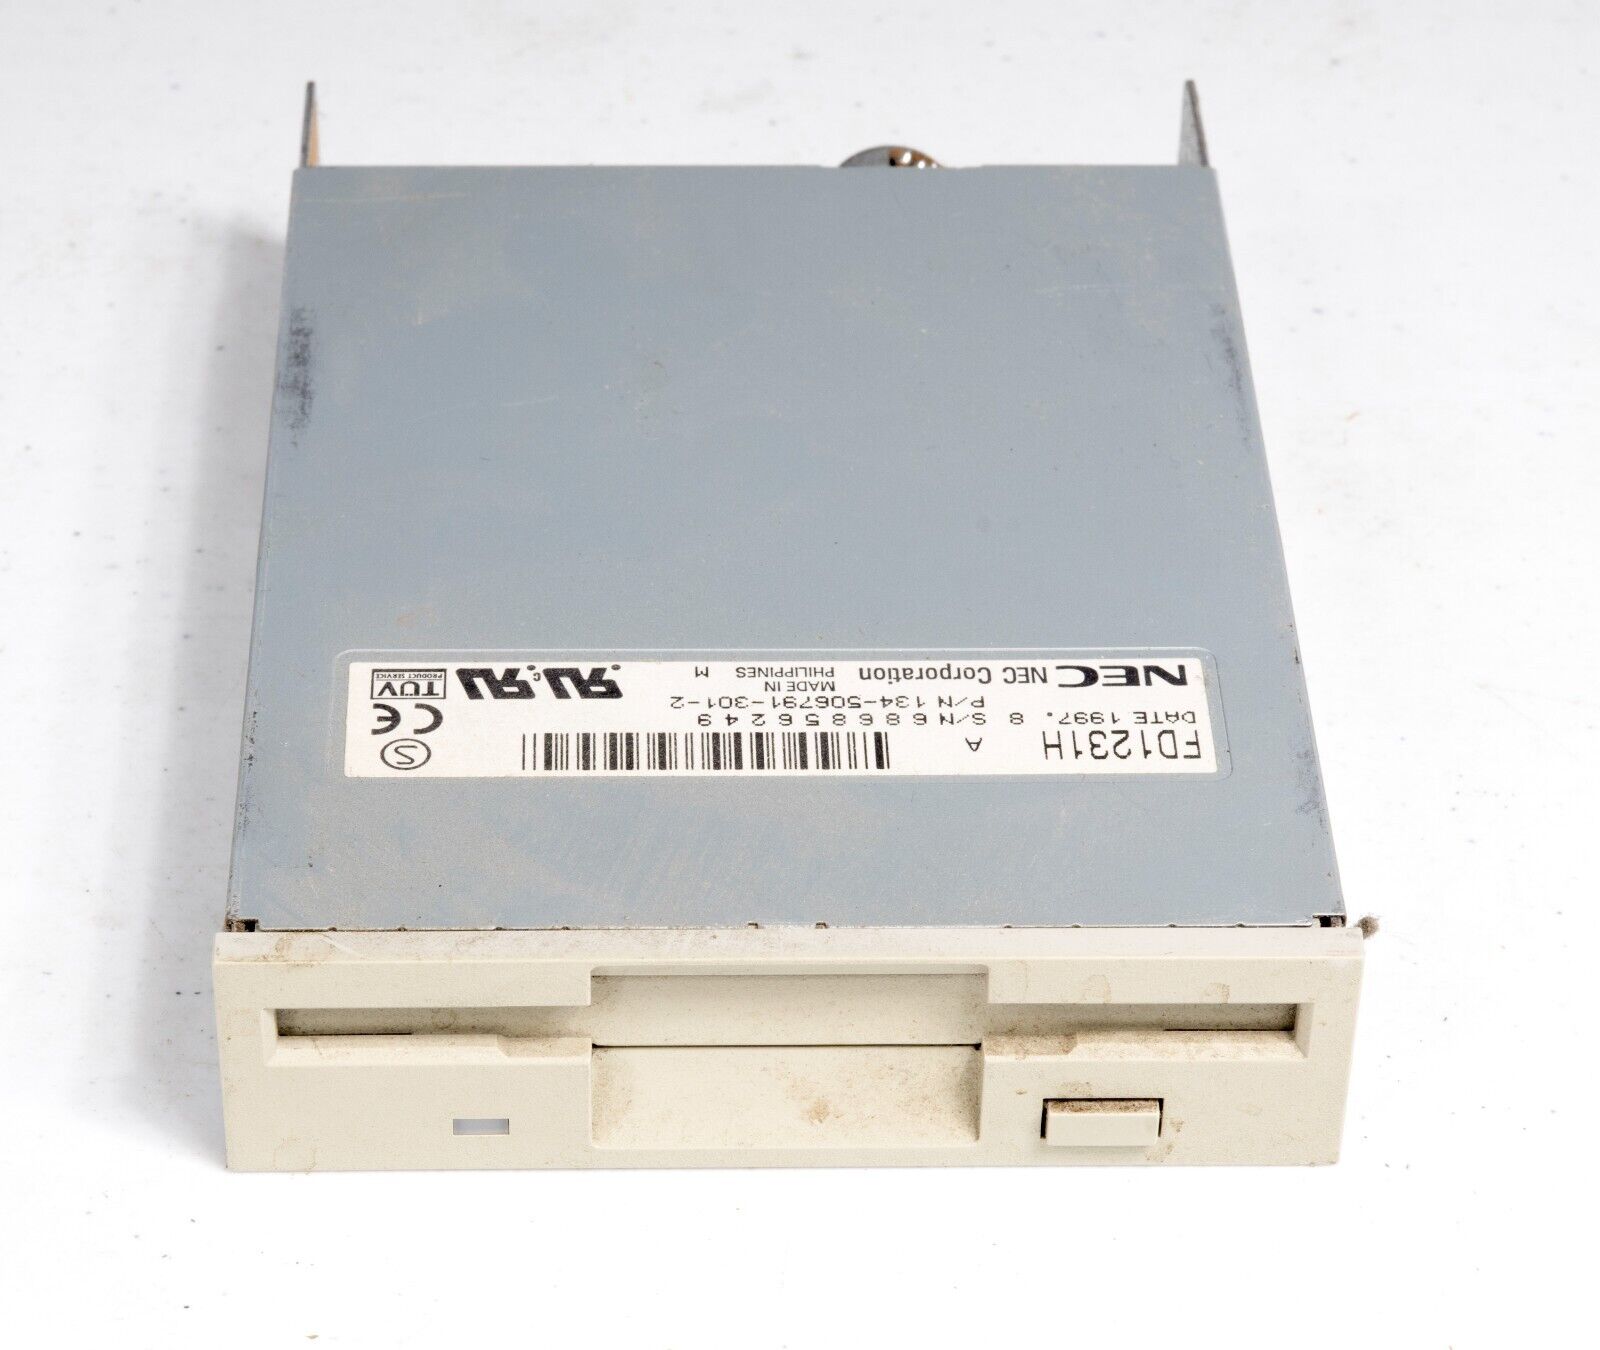 Vintage NEC FD1231H 1.44MB 3.5